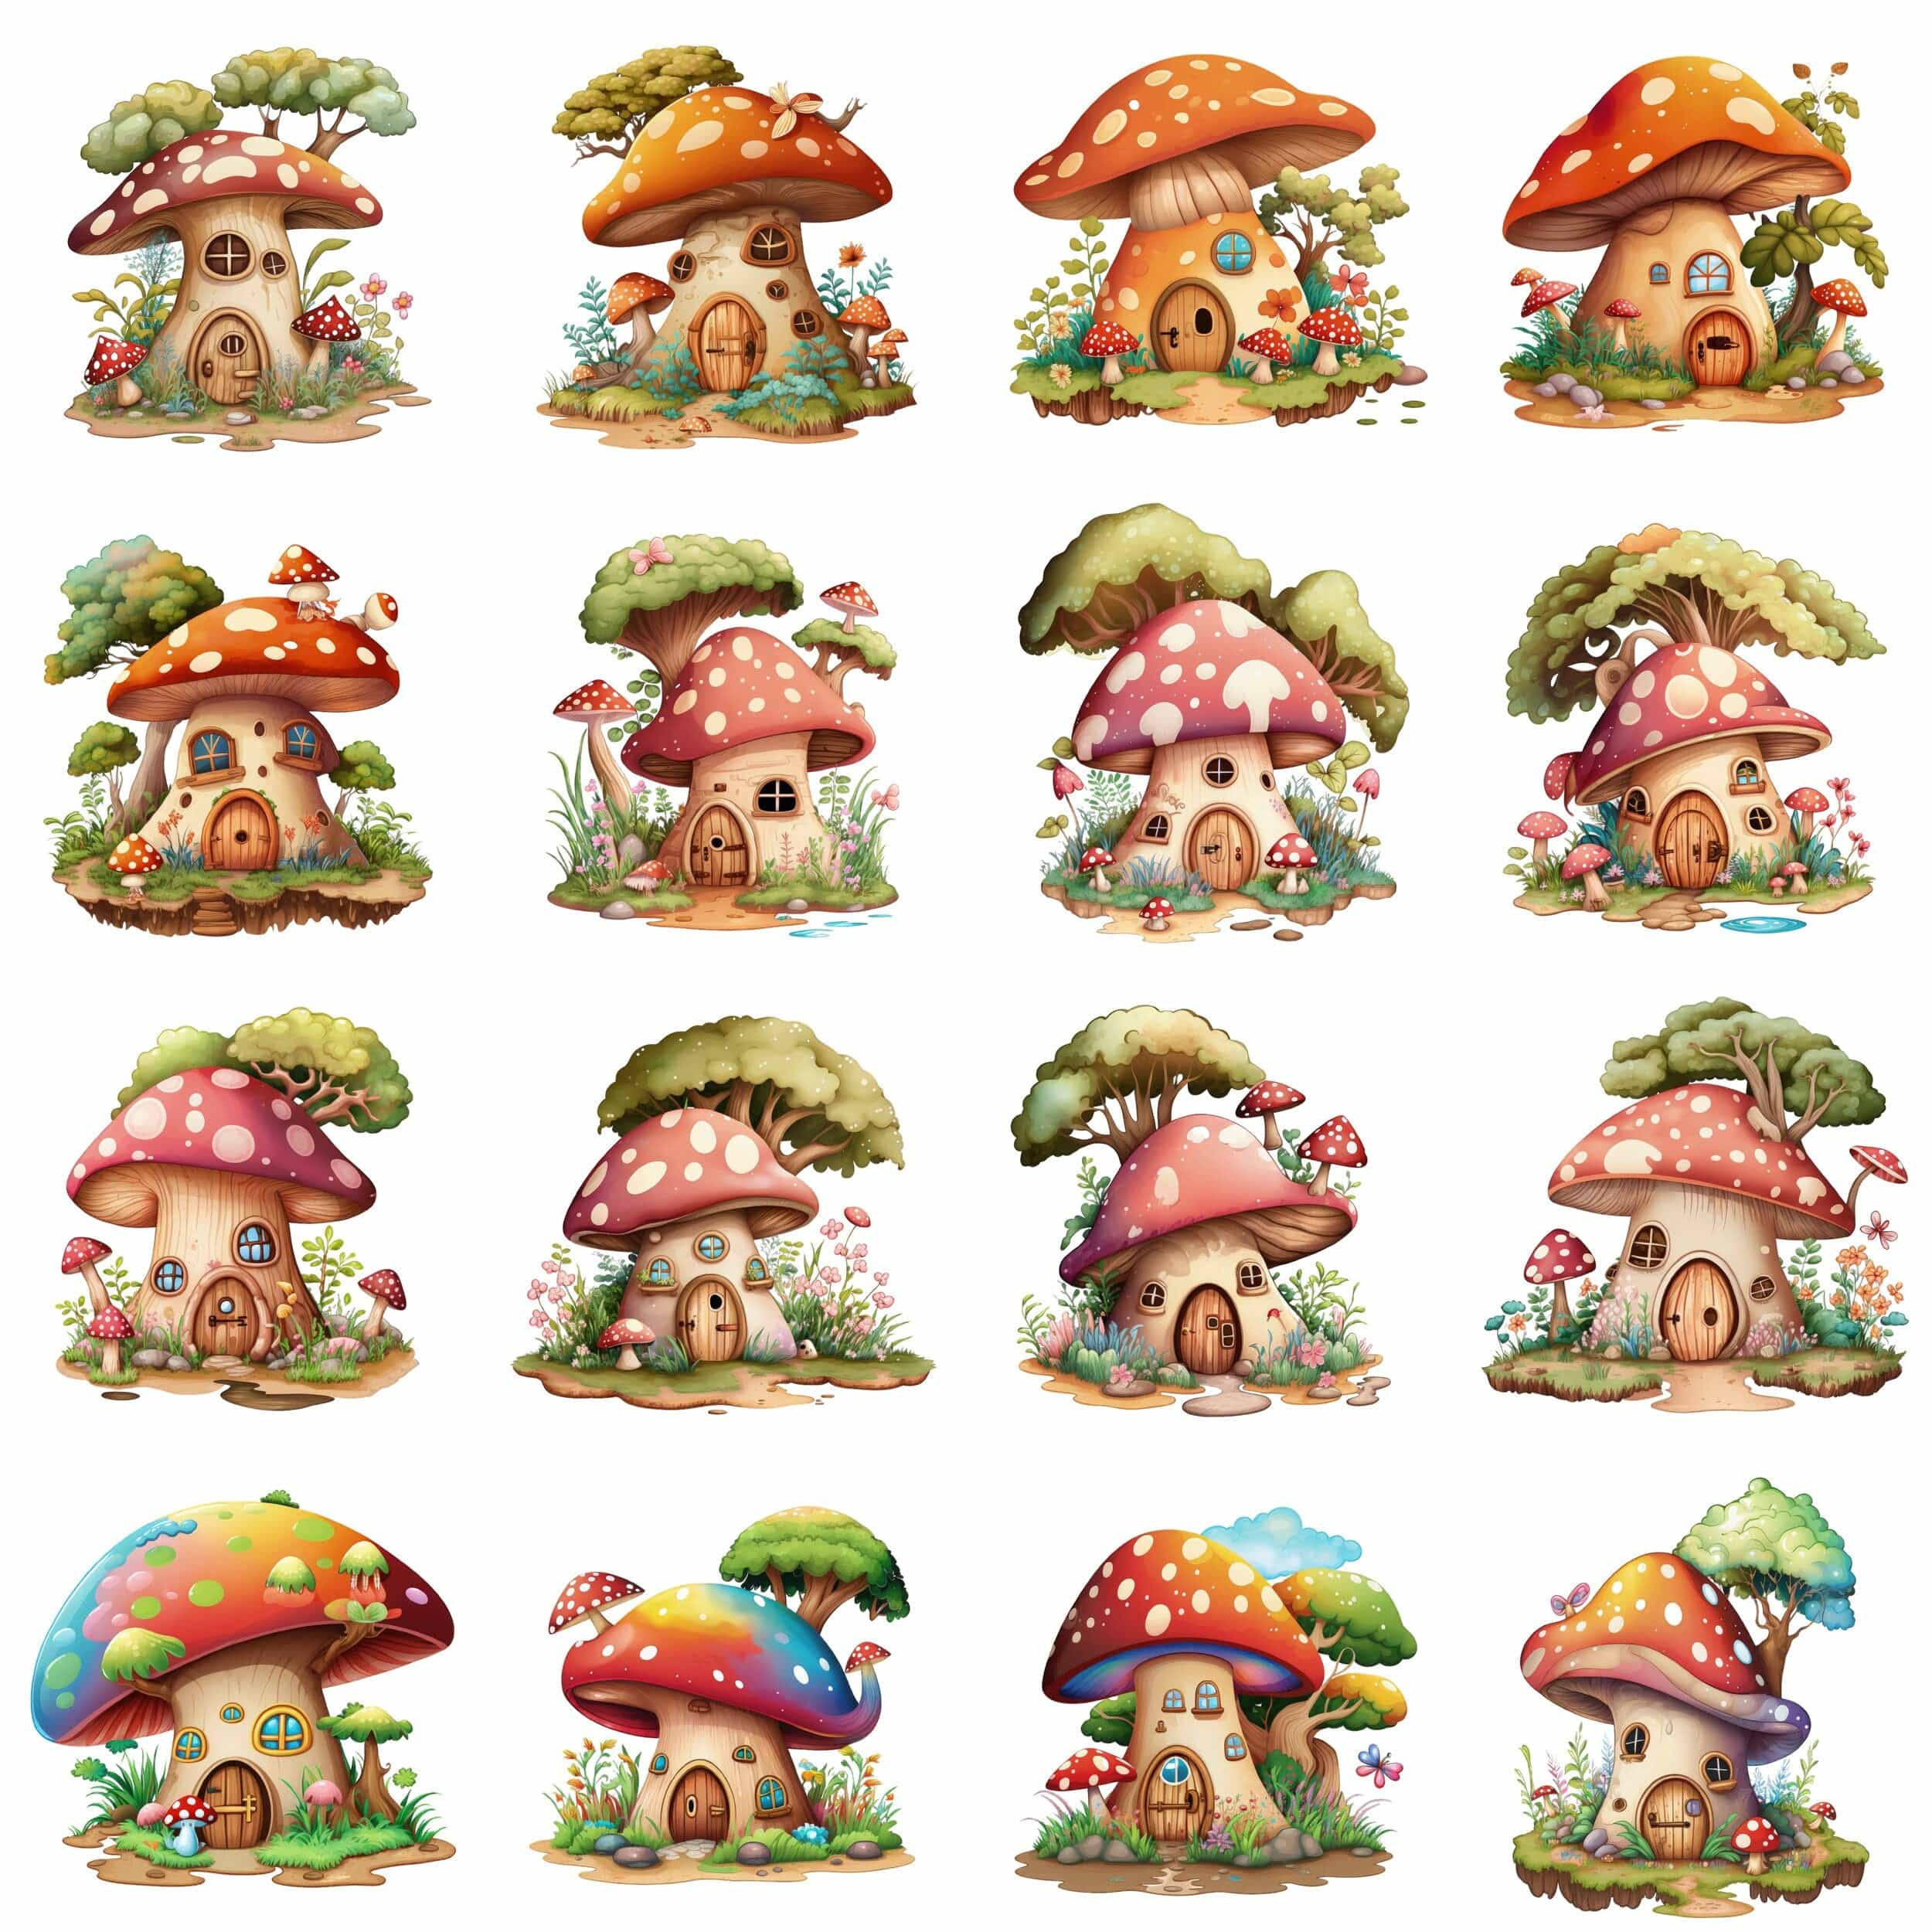 Mushroom House Bundle - 70 Transparent PNG Images, Sublimation, PNG, magical mushroom house, Toadstool House Clipart, Fantasy Mushrooms Digital Download Sumobundle